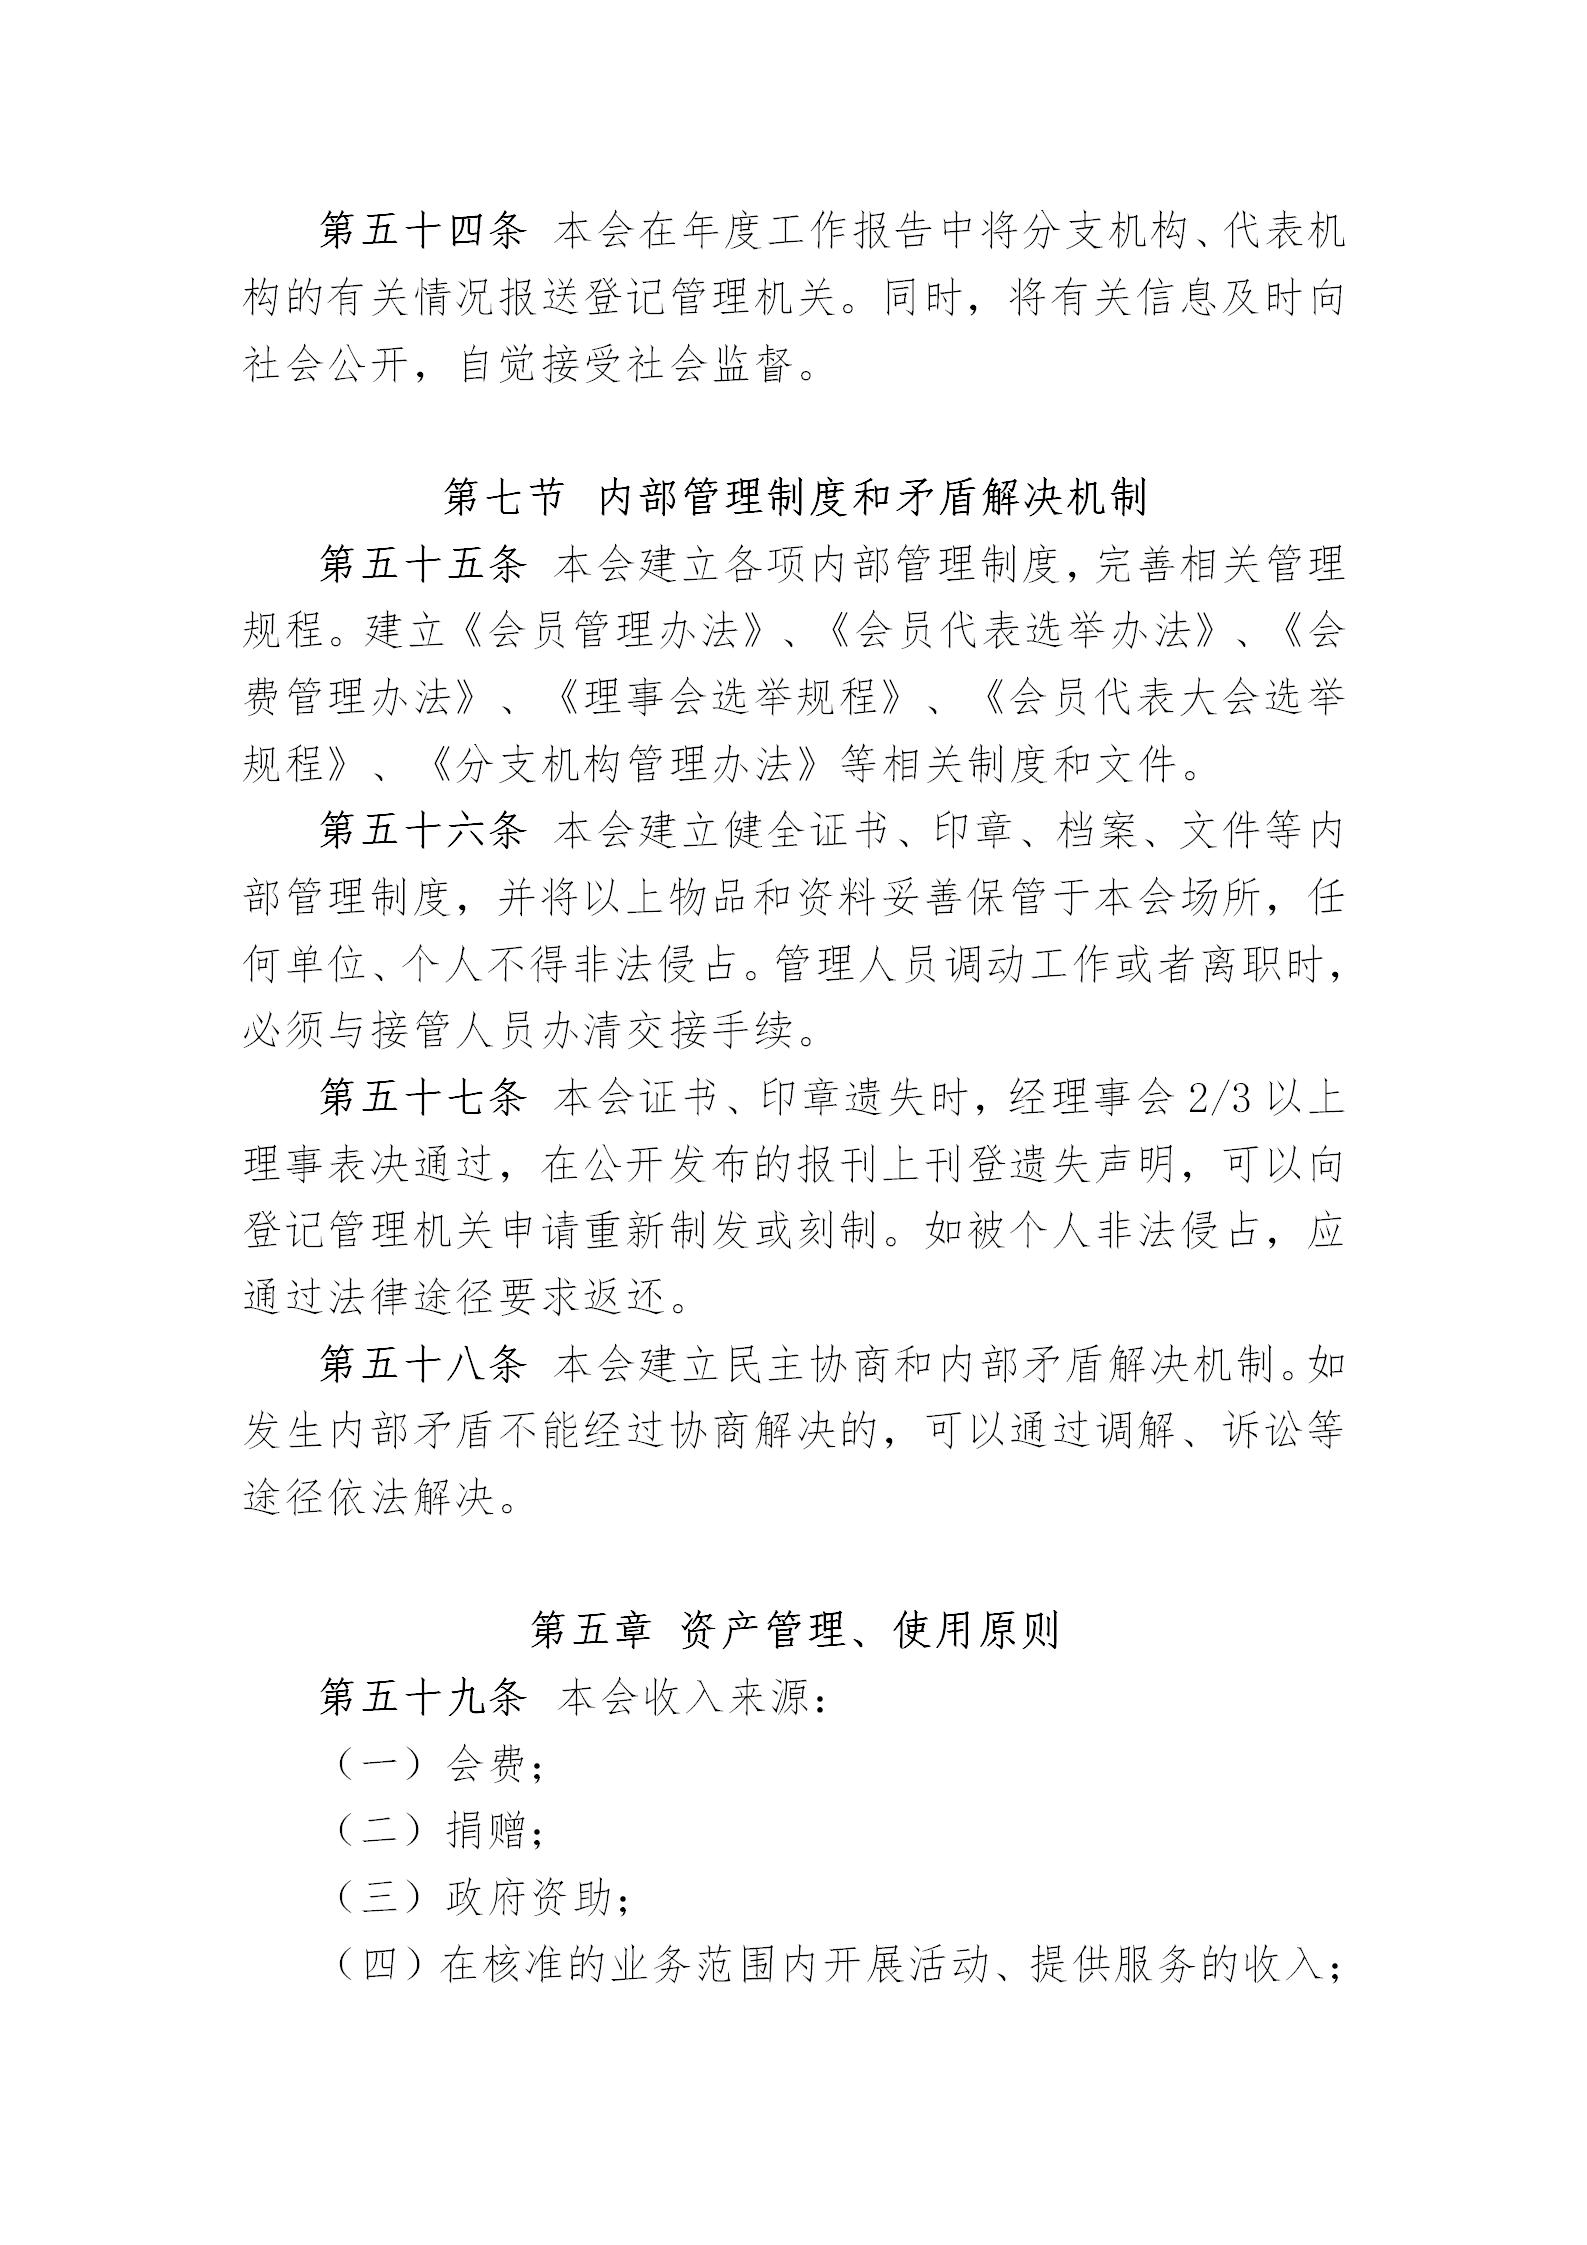 中国演艺设备技术协会章程(定稿)_15.jpg